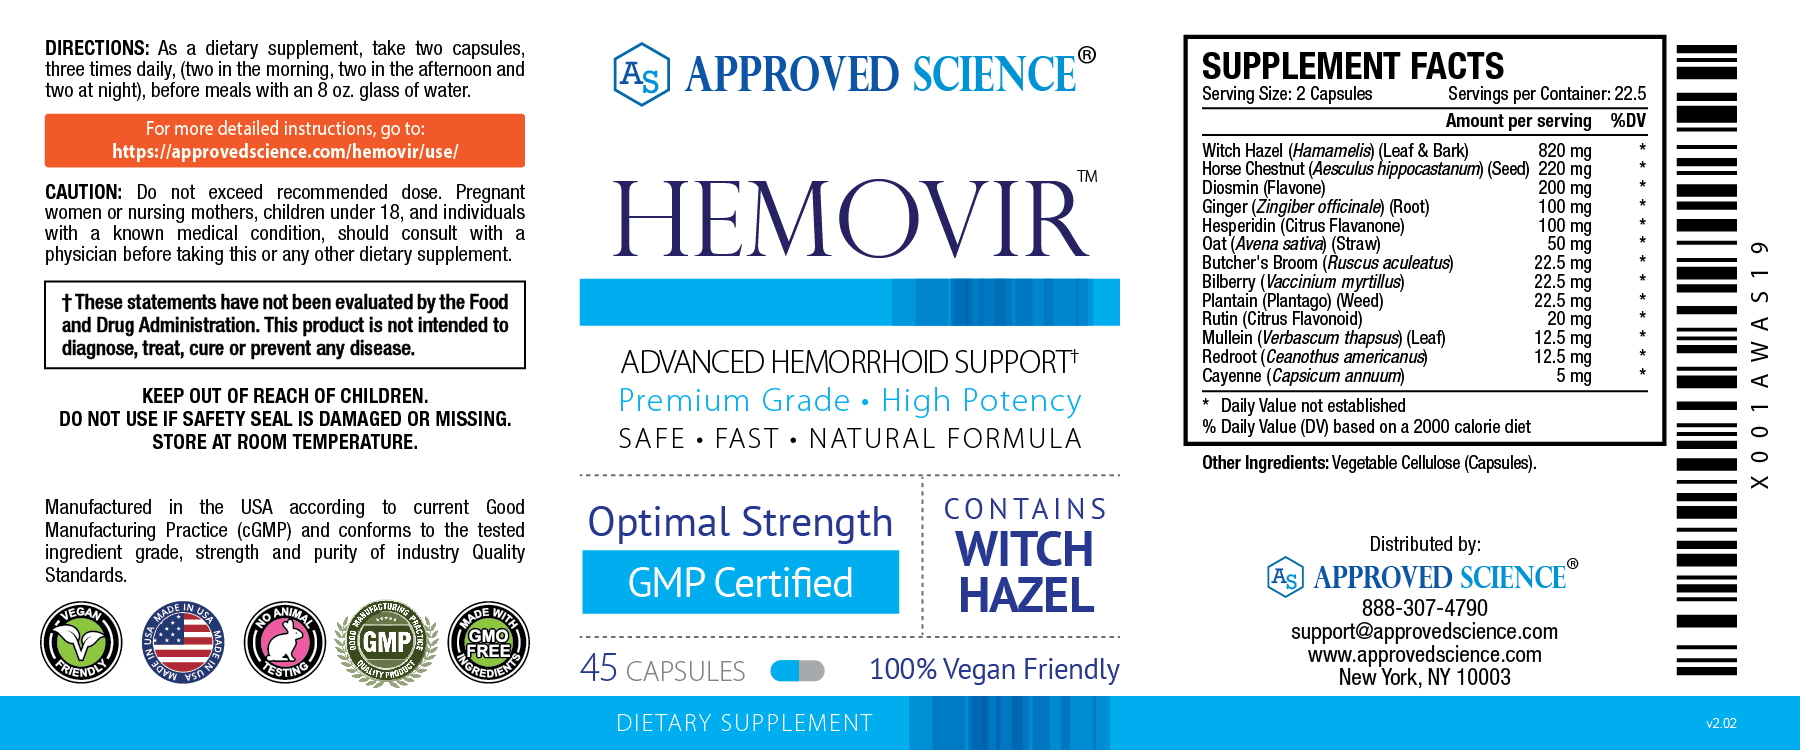 HEMOVIR Supplement Facts